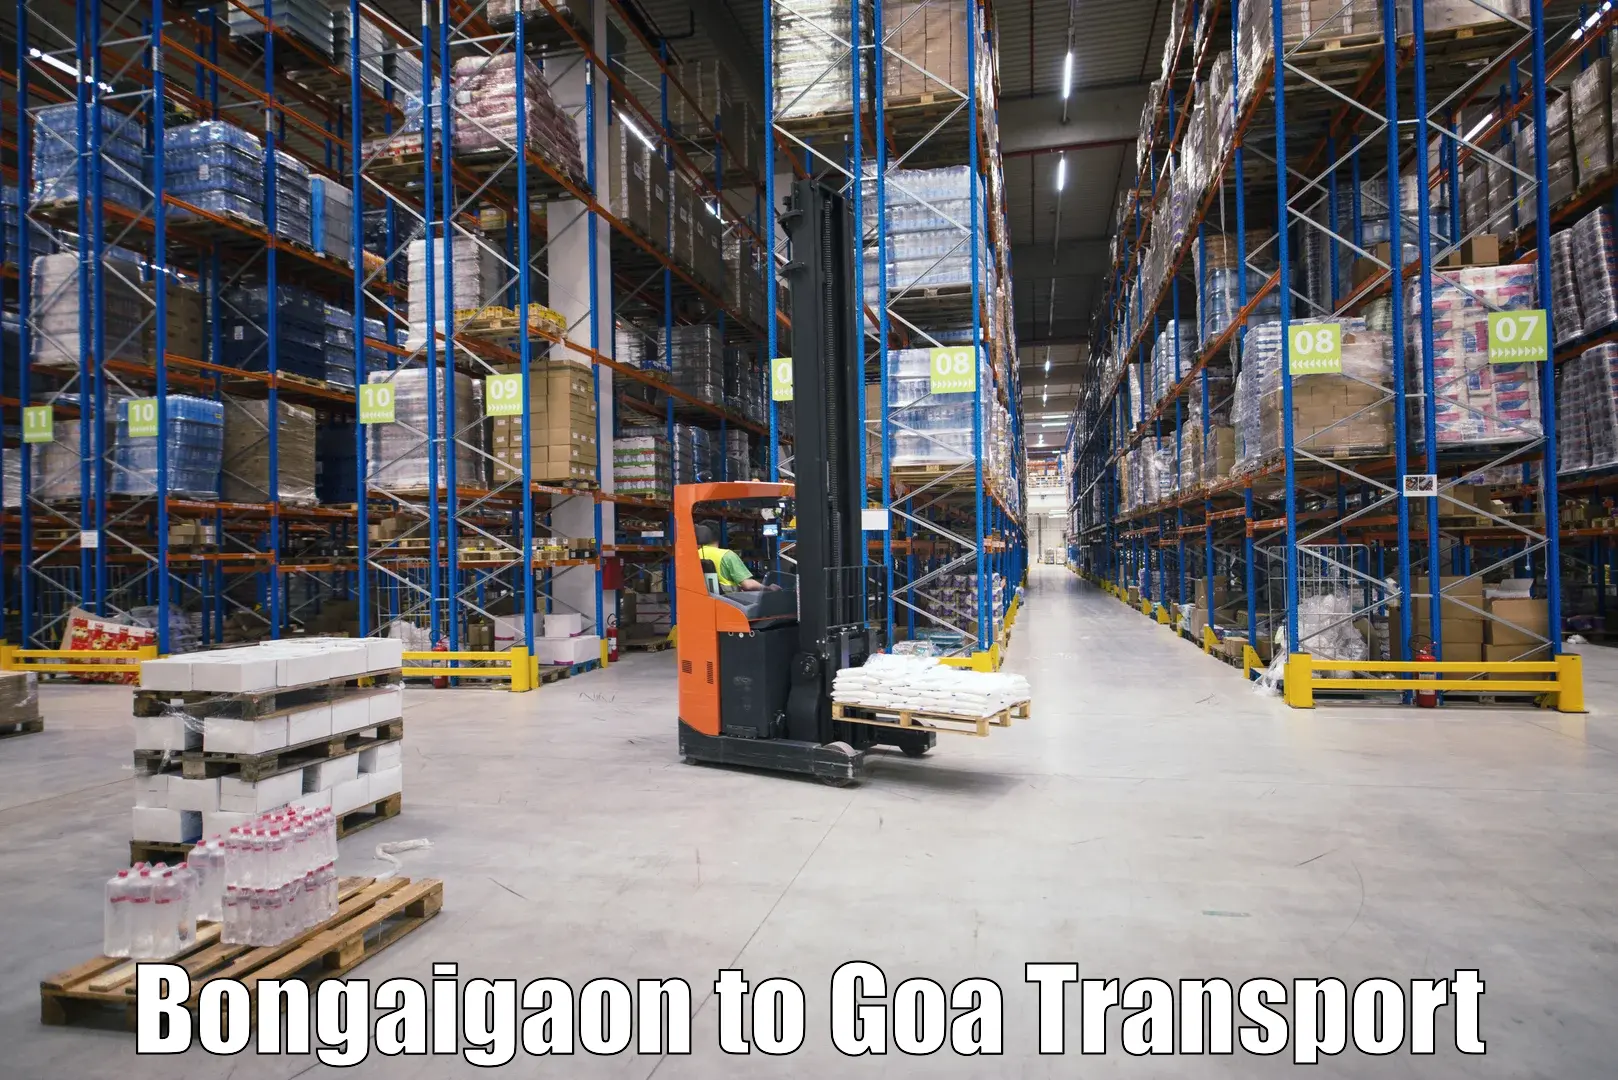 Cargo transport services Bongaigaon to Margao